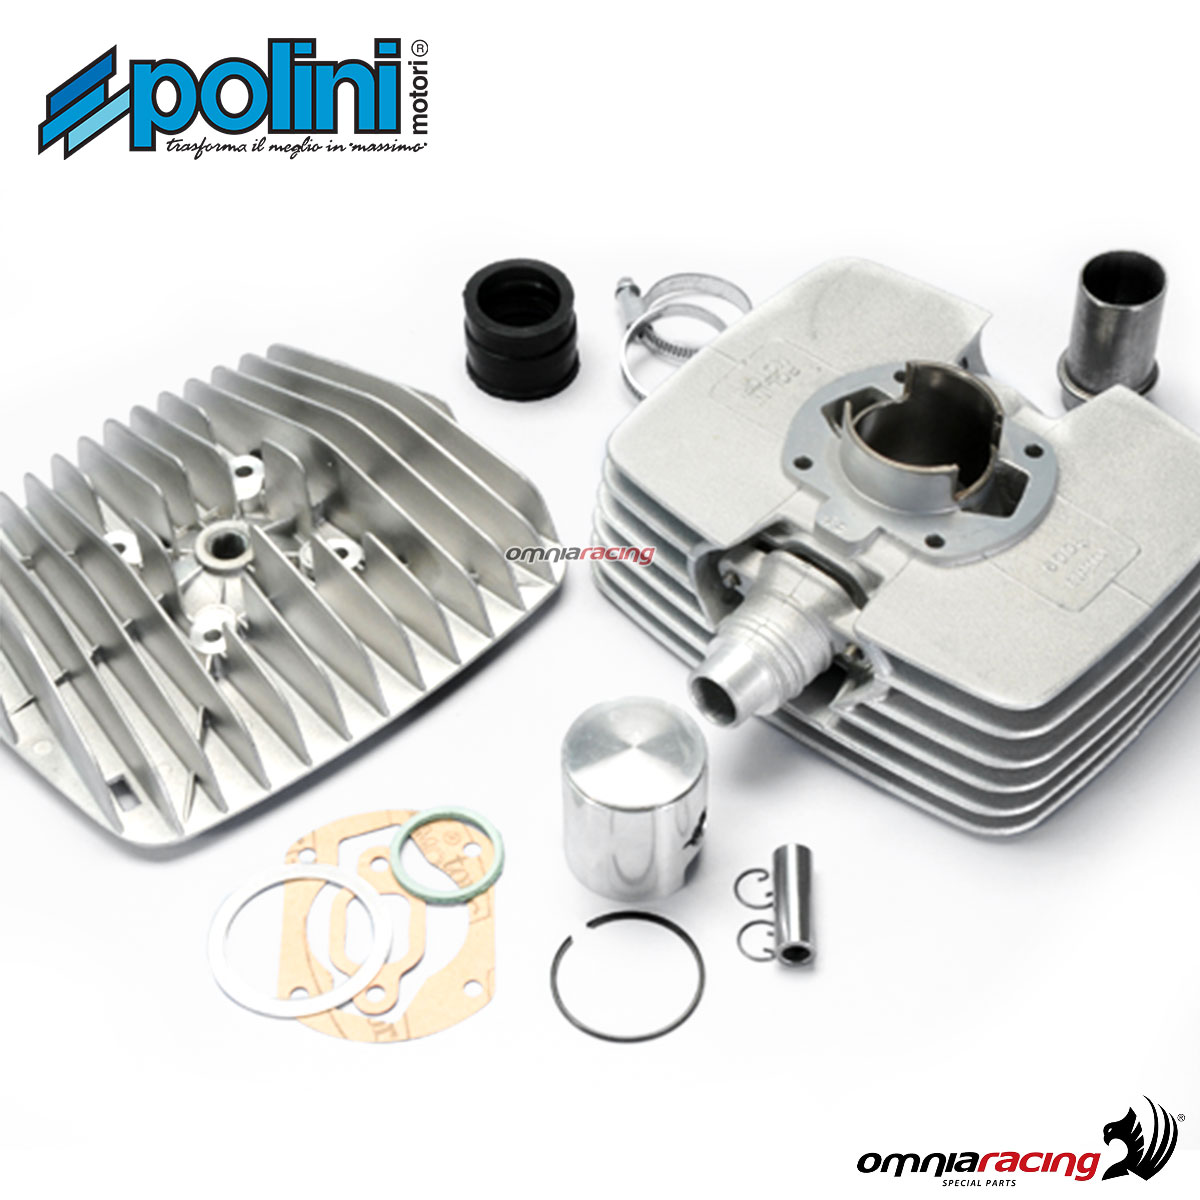 Kit gruppo termico Polini in alluminio 80cc per Sachs 50 5 marce Corsa 44 2T